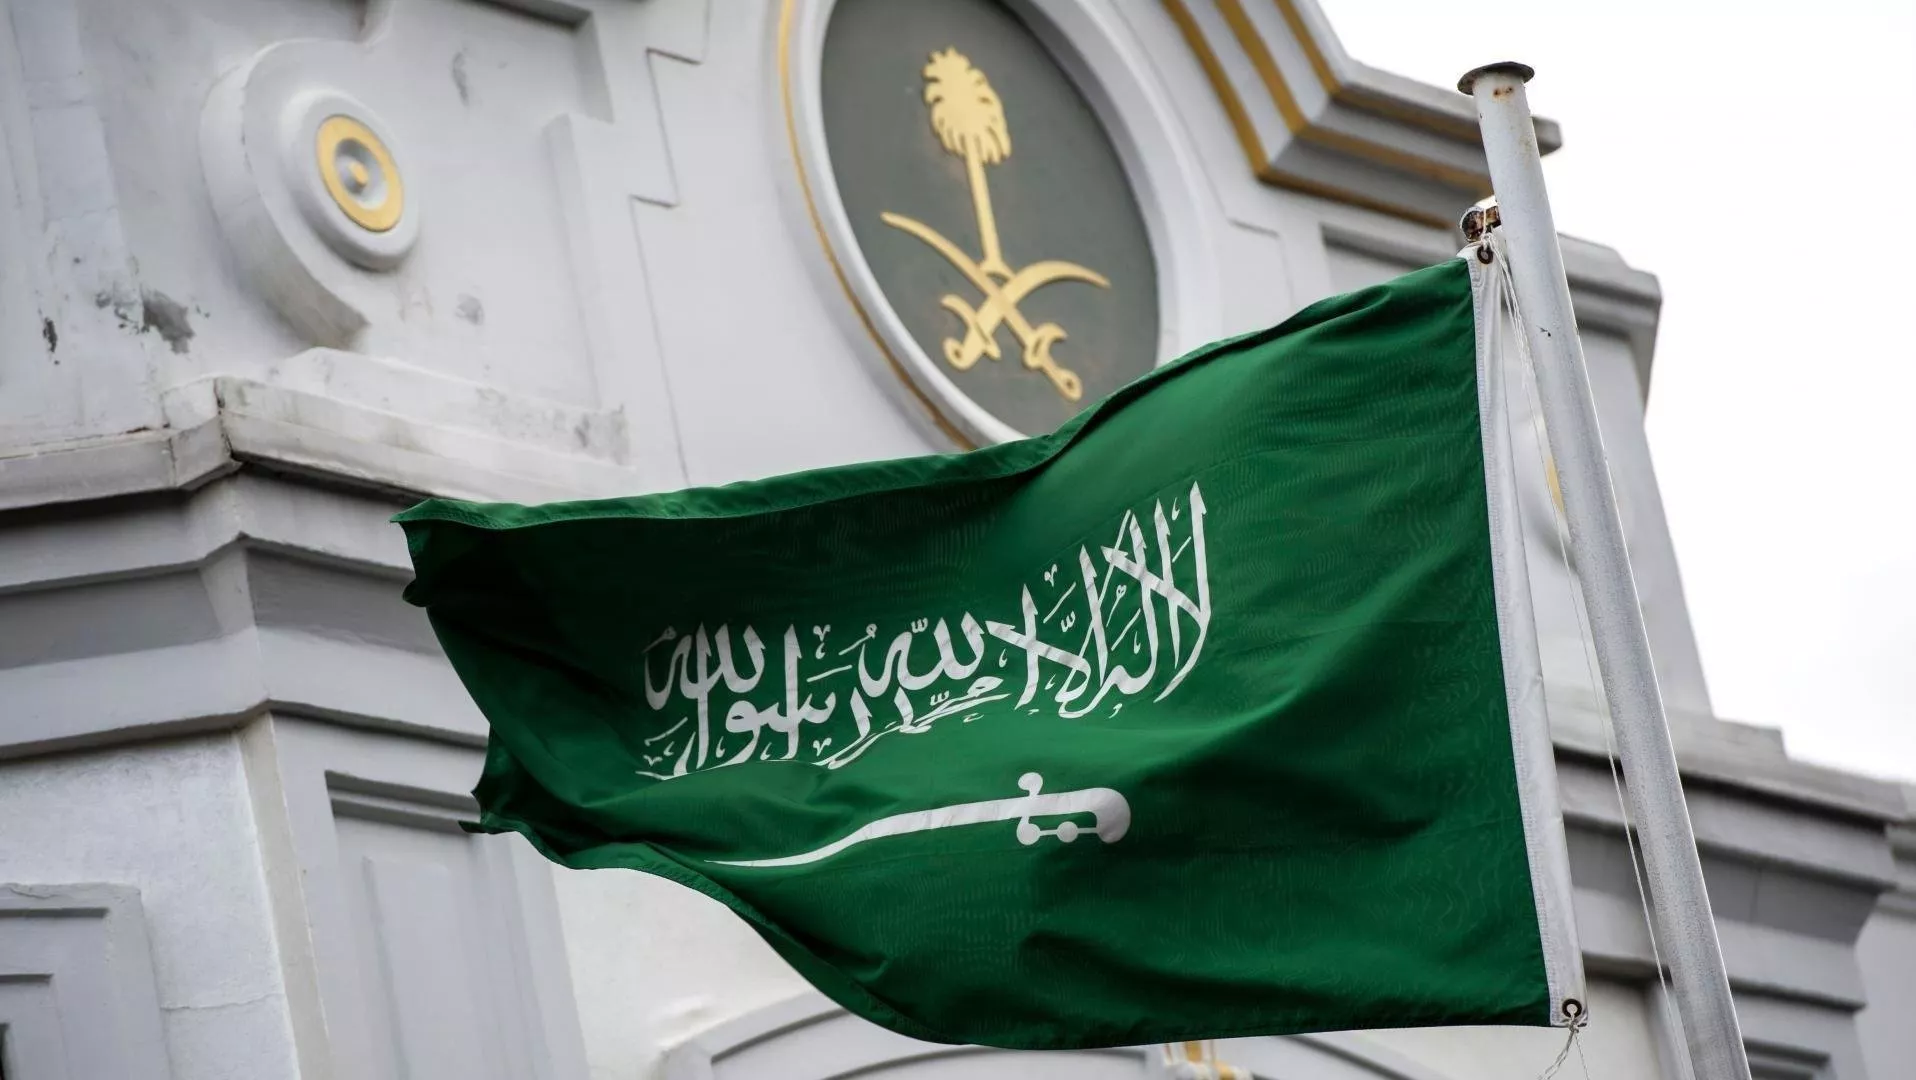 في خطوةٍ لافتة، إطلاق مؤتمر تمكين المرأة السعودية في عهد الملك سلمان ضمن رؤية 2030